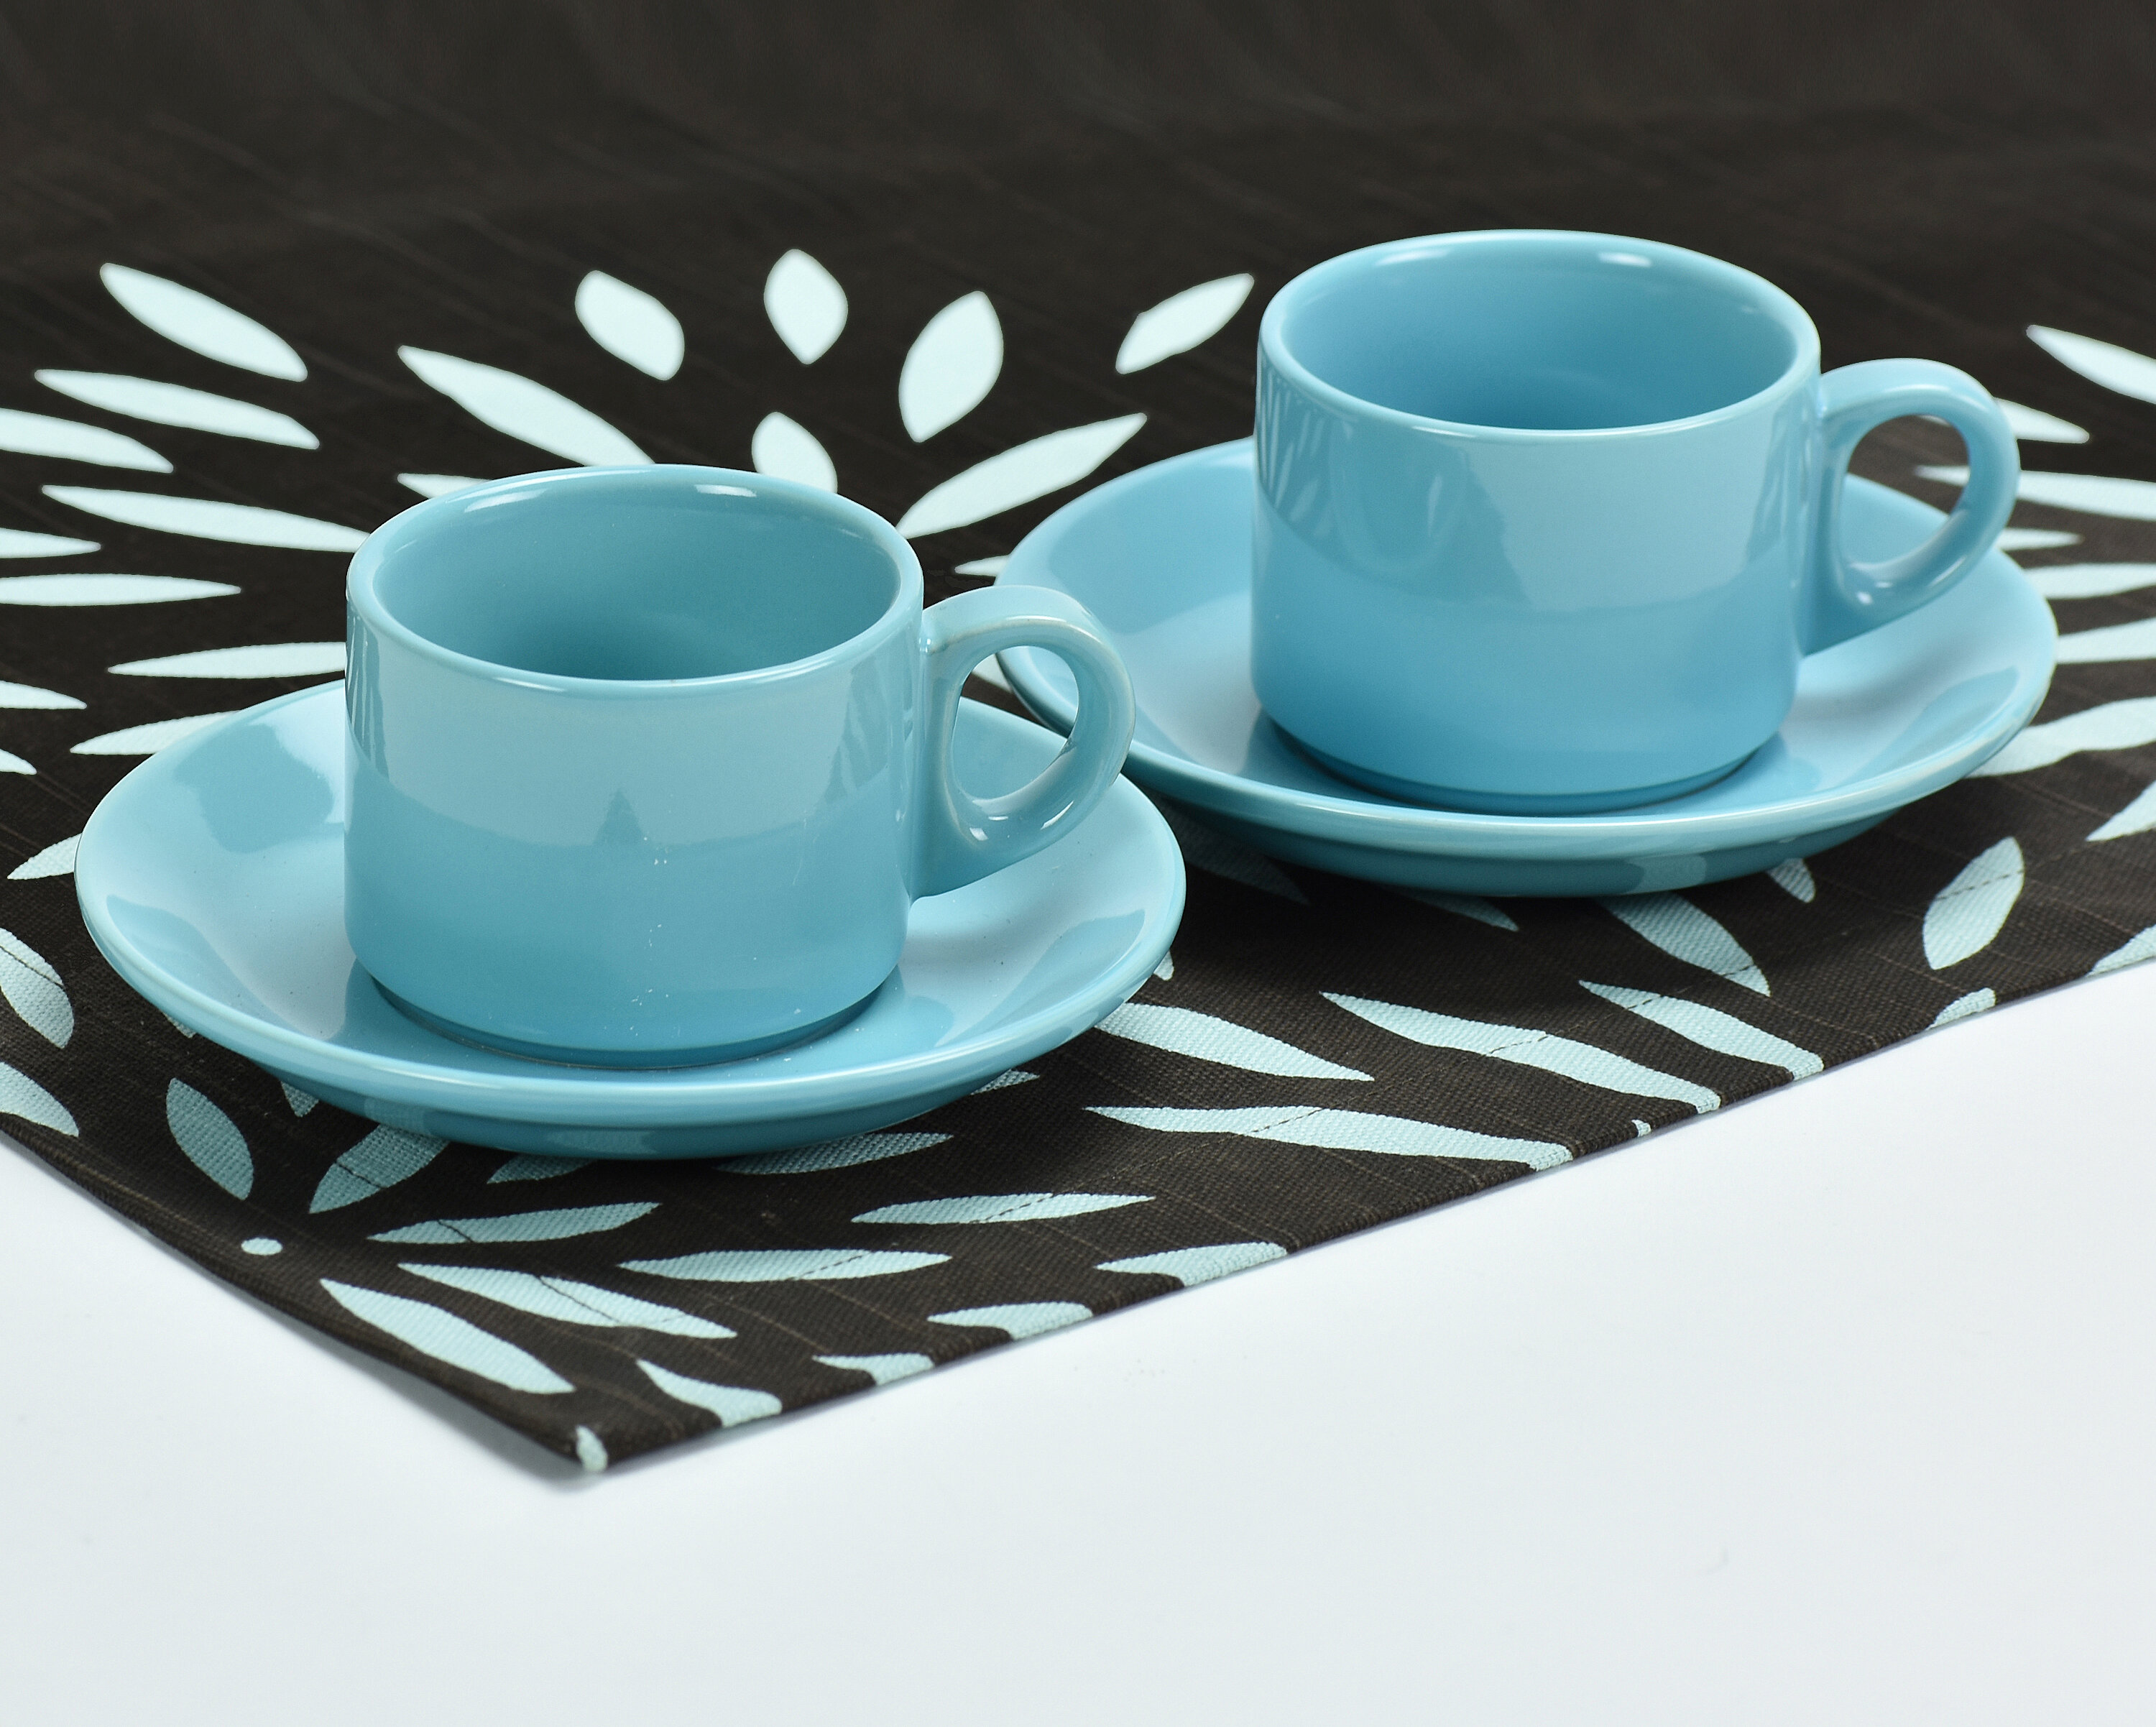 blomus Sablo Ceramic Espresso Cups, Set of 4, Stoneware, 2 Colors